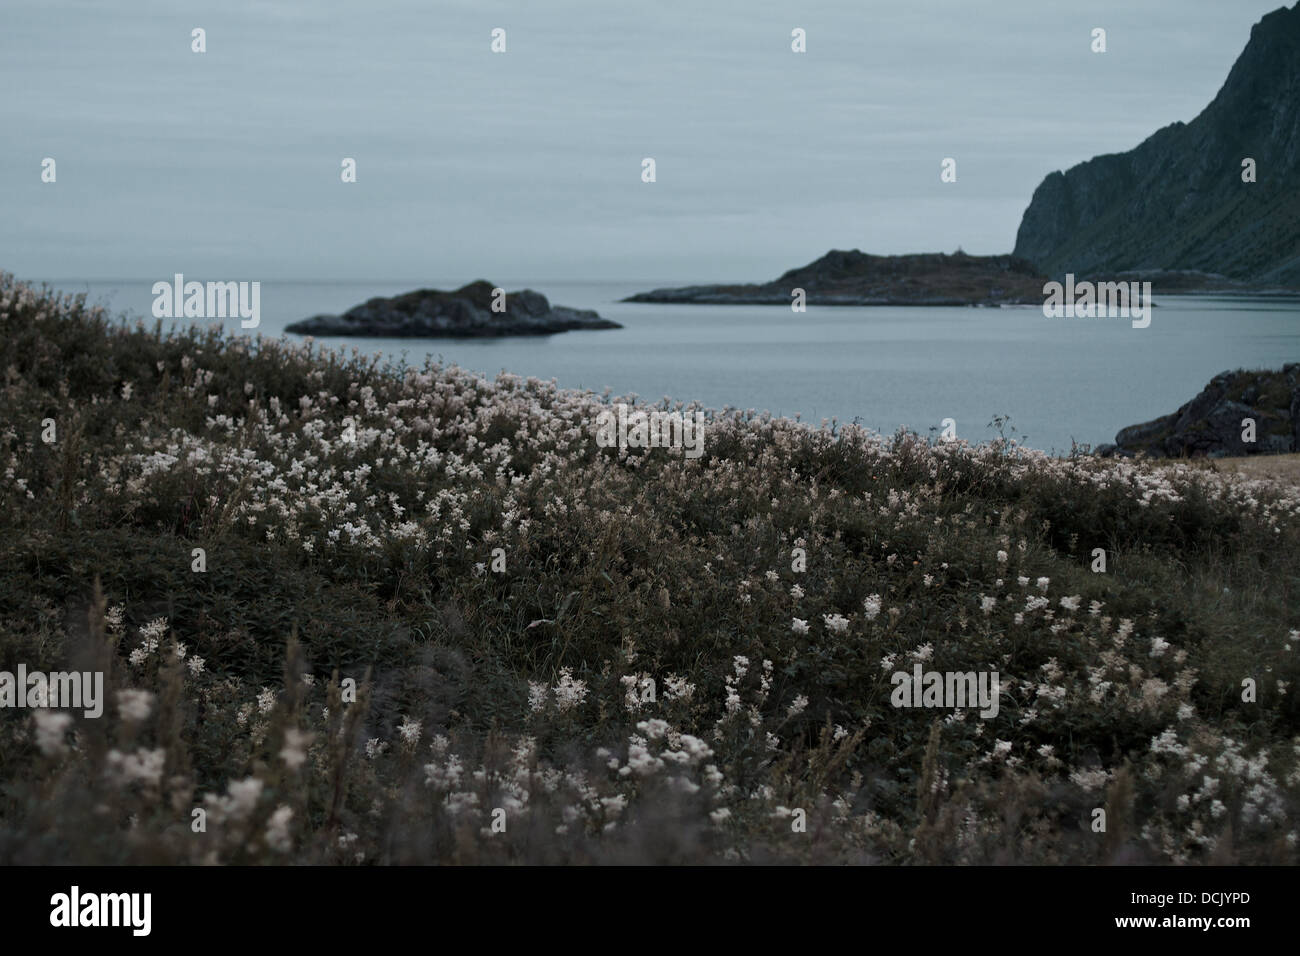 Soleil de minuit en Norvège. Fleurs blanches à l'avant-plan et laiteux ciel et mer en arrière-plan. Banque D'Images